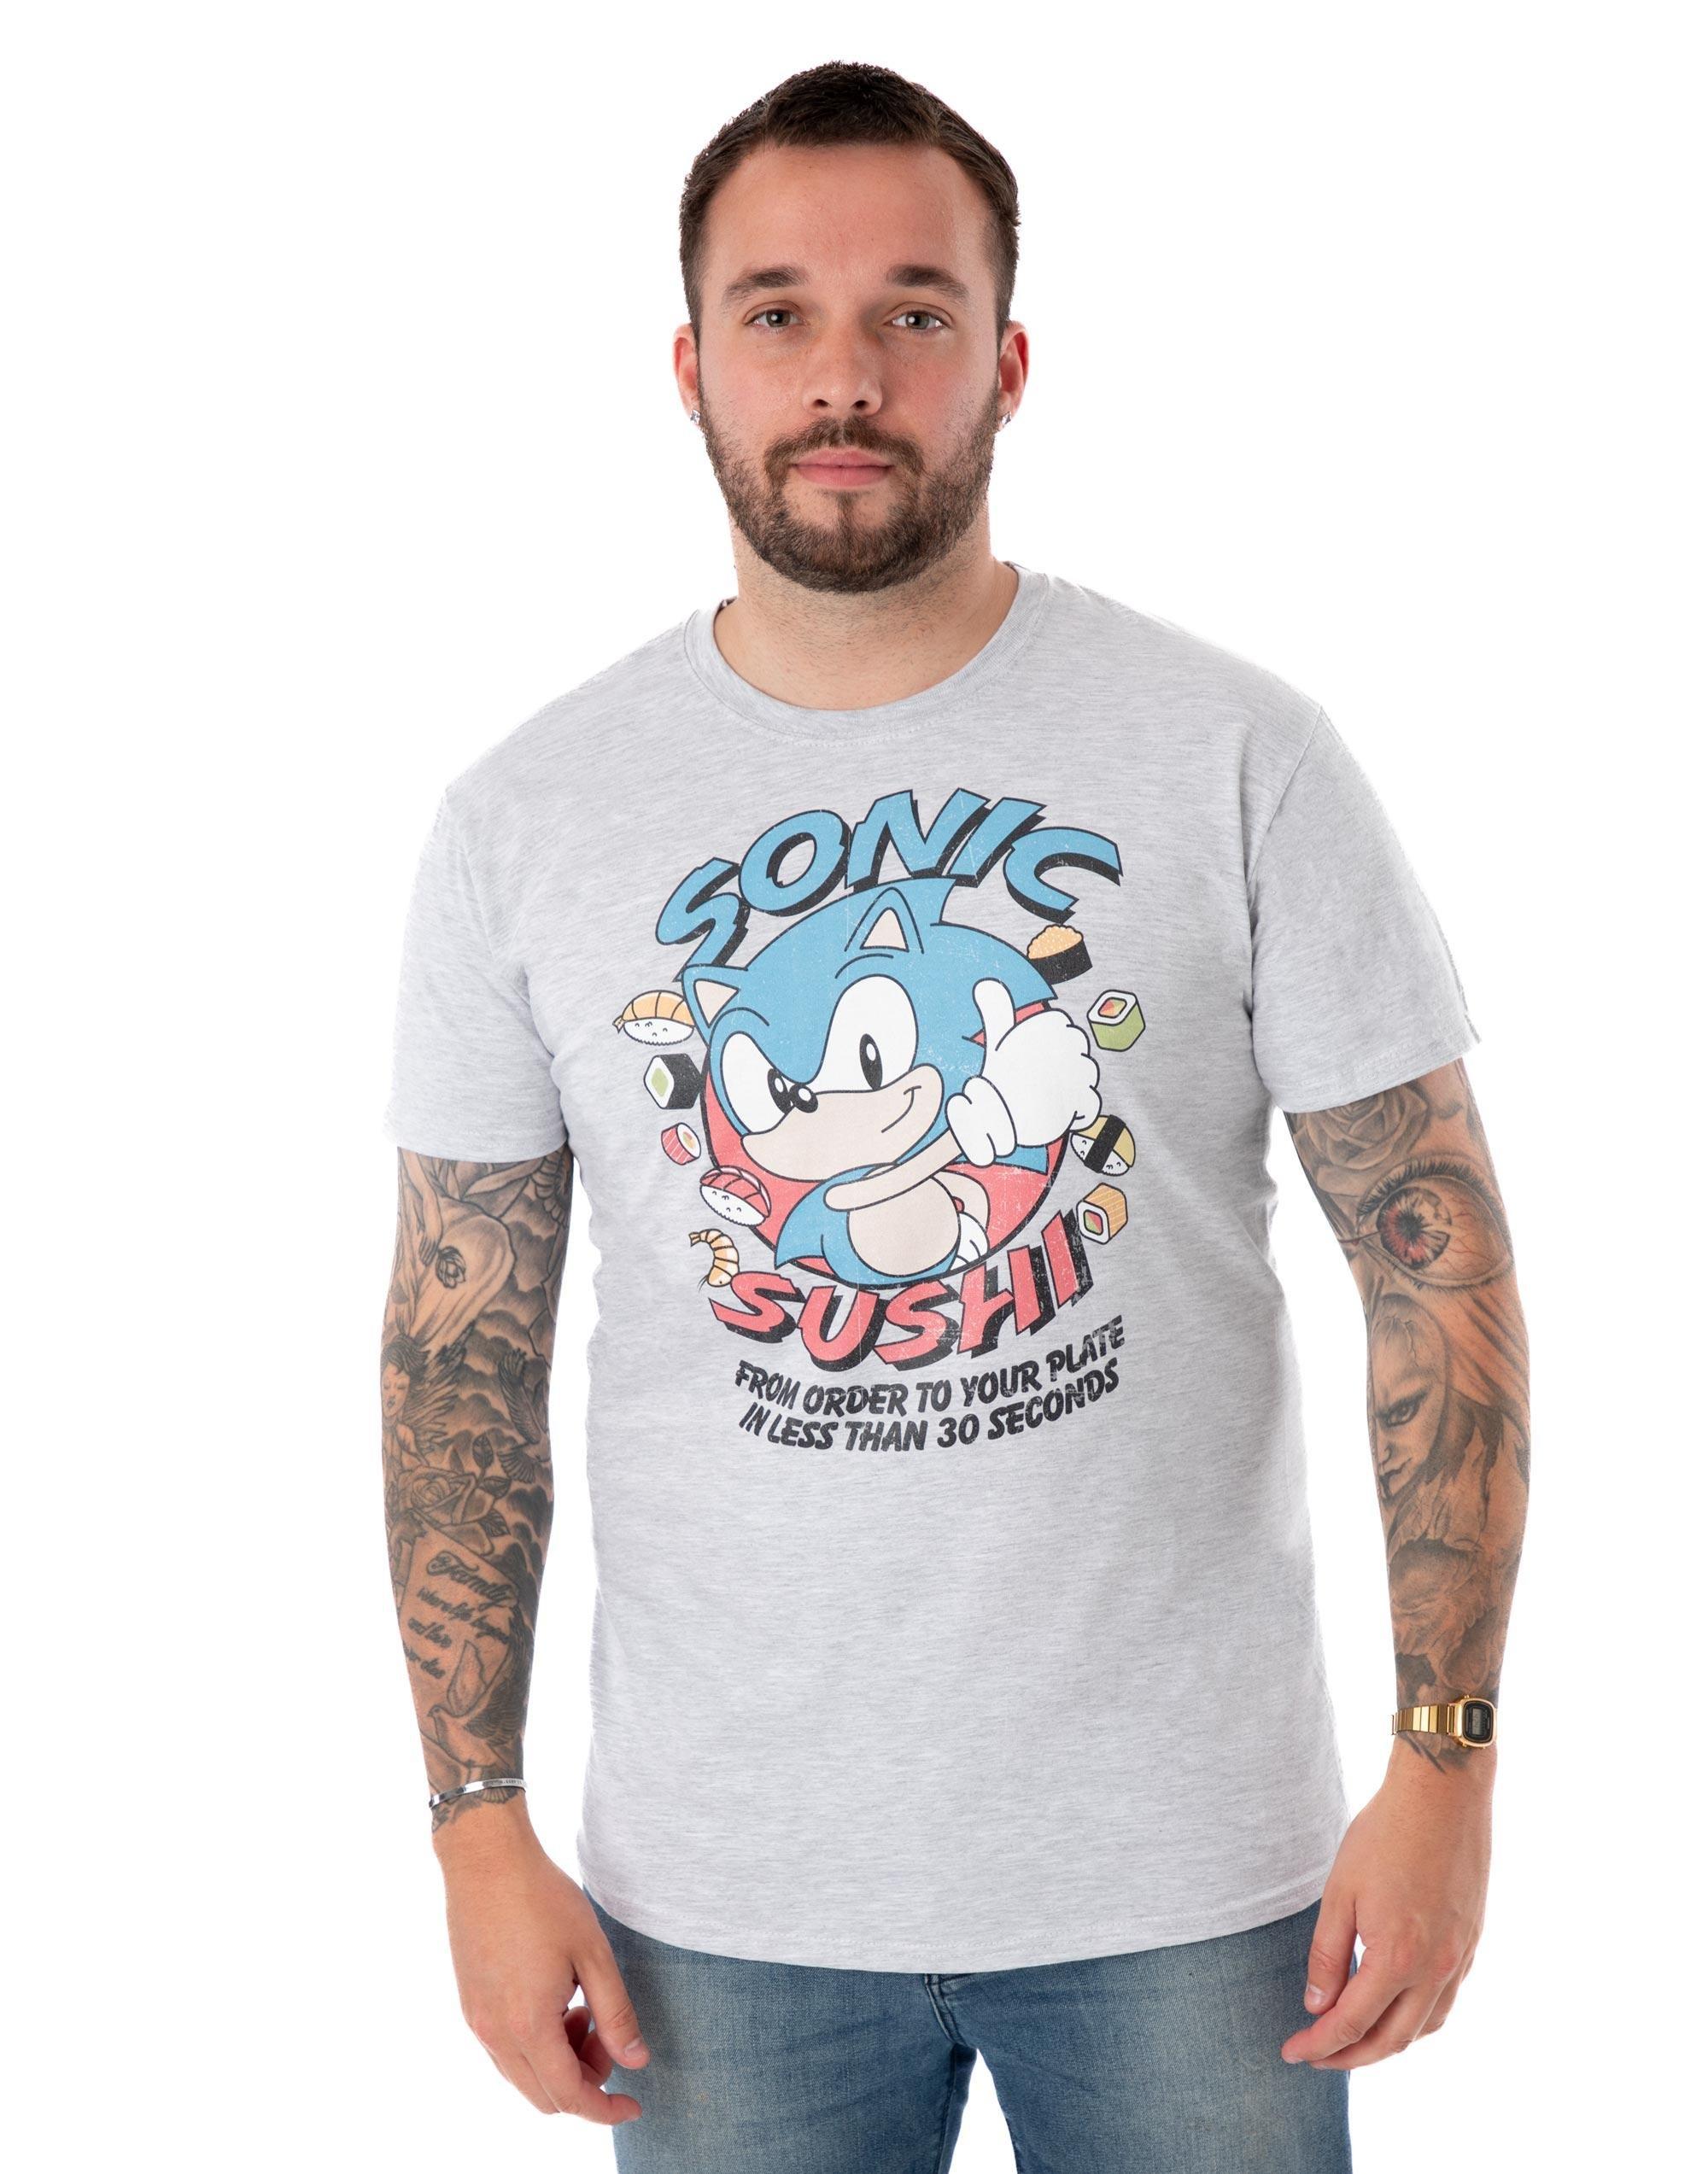 Sonic The Hedgehog  TShirt  kurzärmlig 